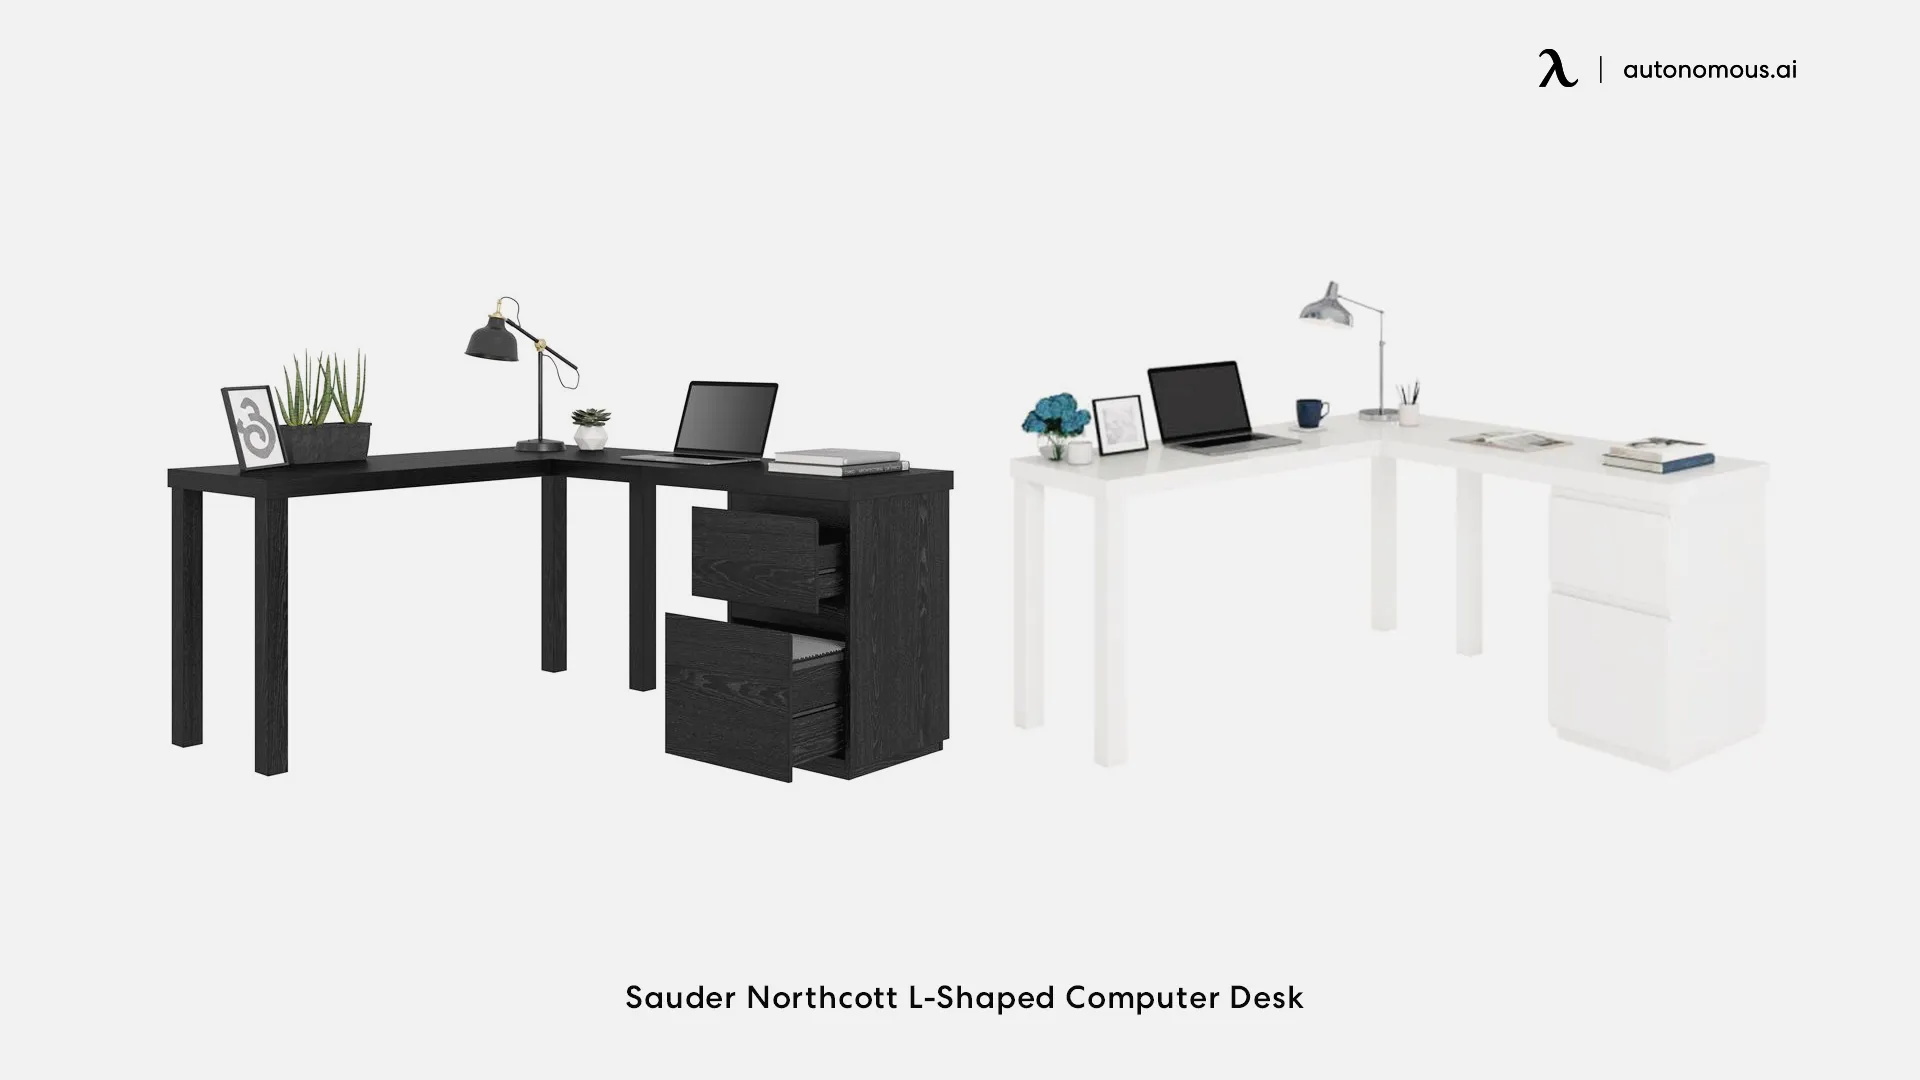 Sauder Northcott glass L-shaped computer desk